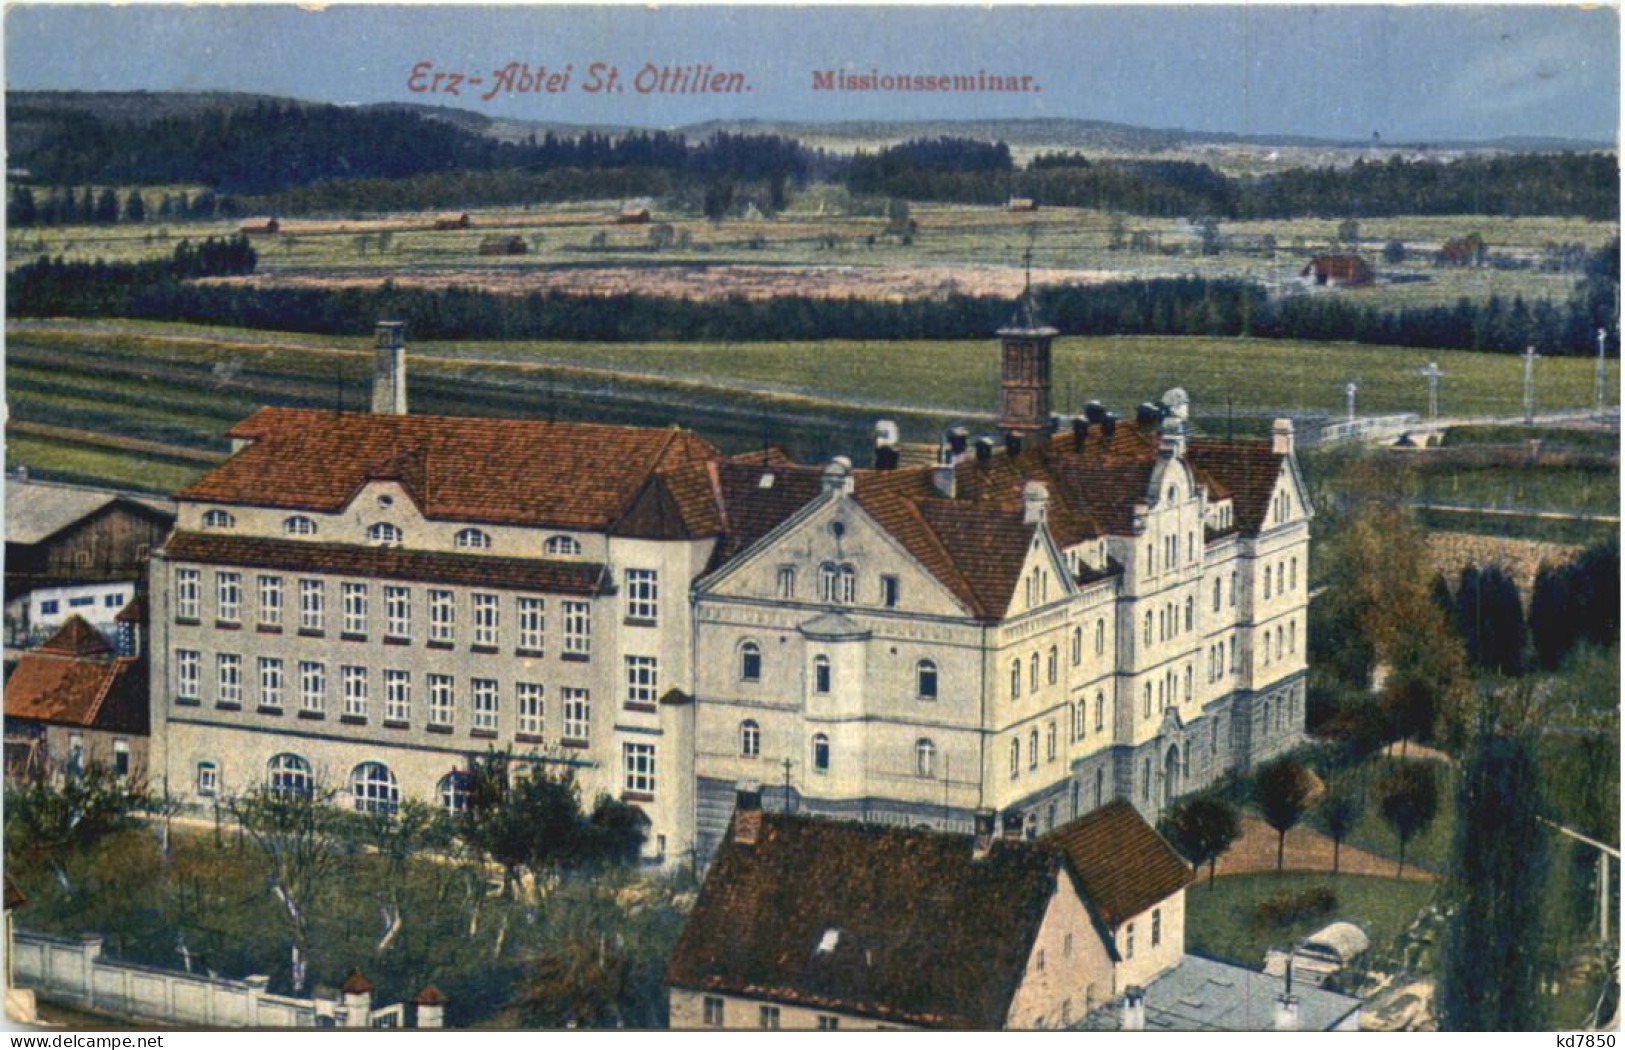 St. Ottilien, Missionsseminar - Landsberg